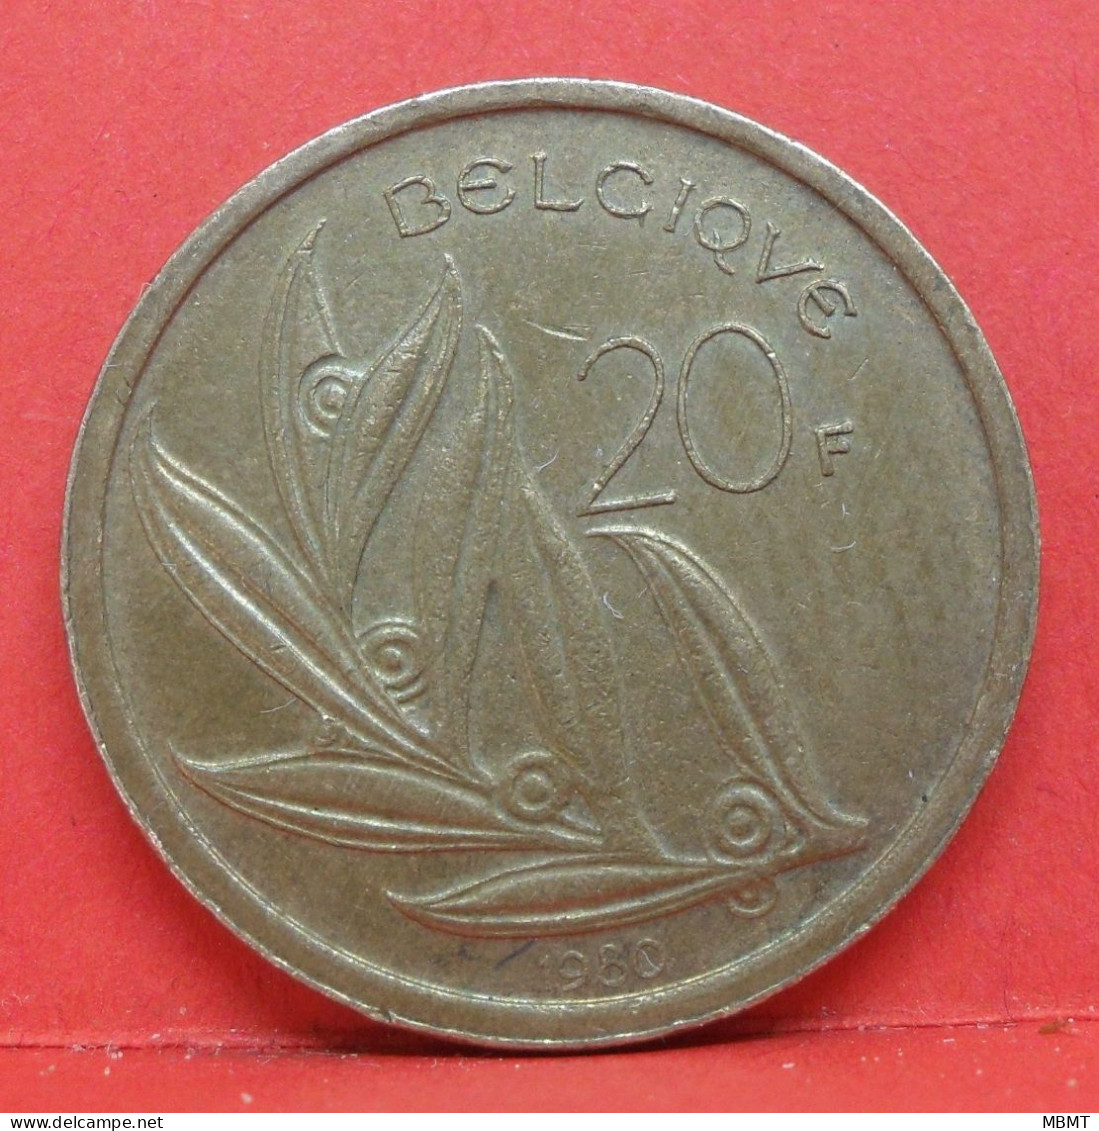 20 Francs 1980 - TTB - Pièce Monnaie Belgique - Article N°1843 - 20 Frank